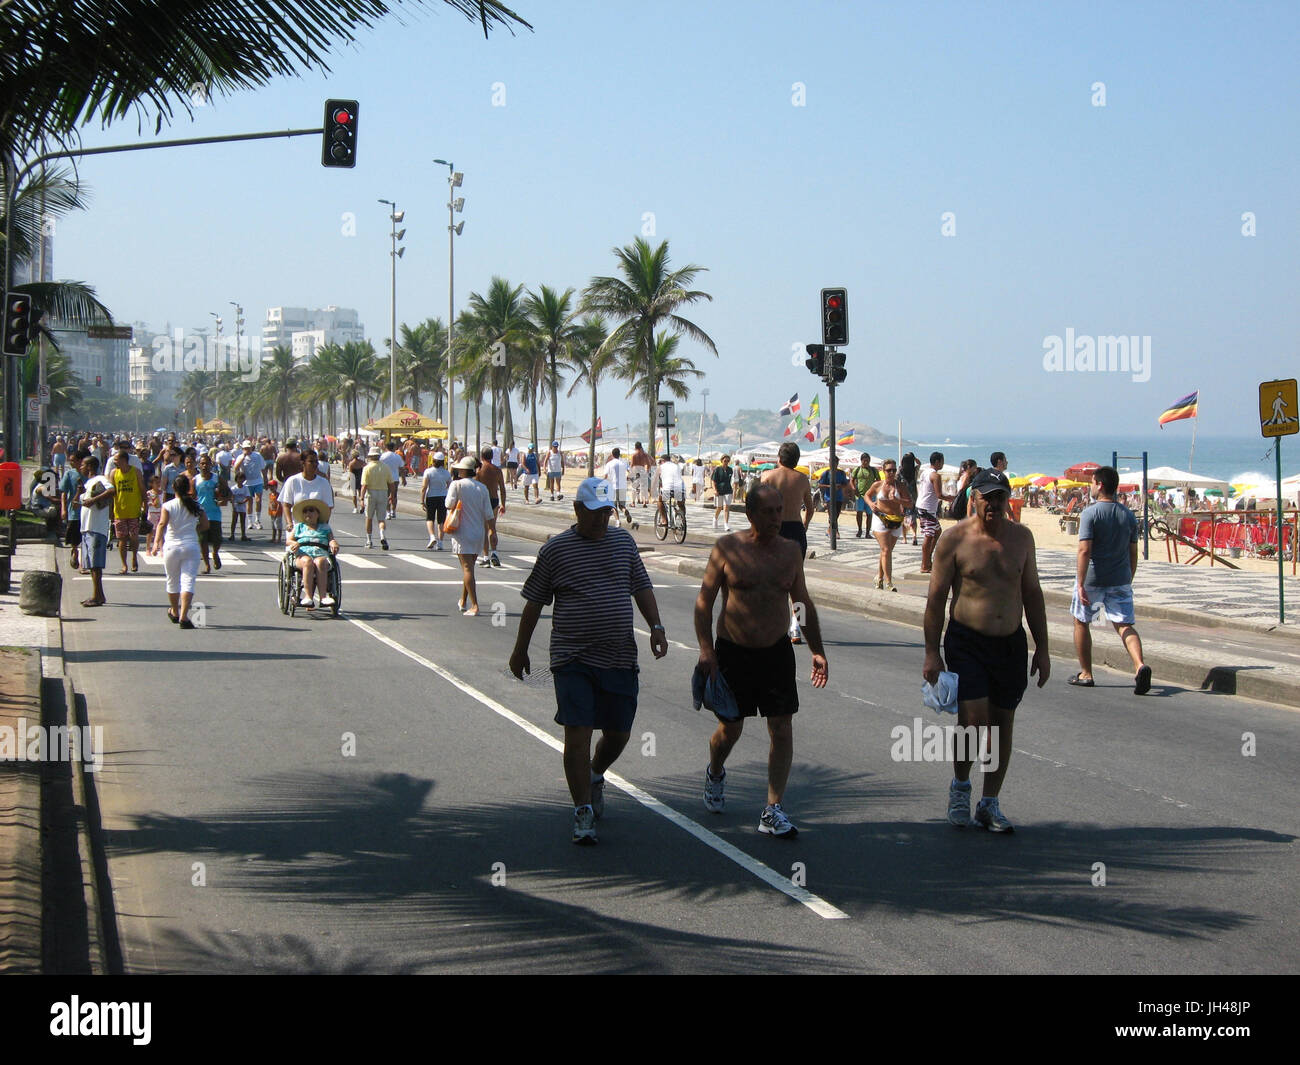 Les gens, la plage, la ville, l'Ipanema, Rio de Janeiro, Brésil Banque D'Images